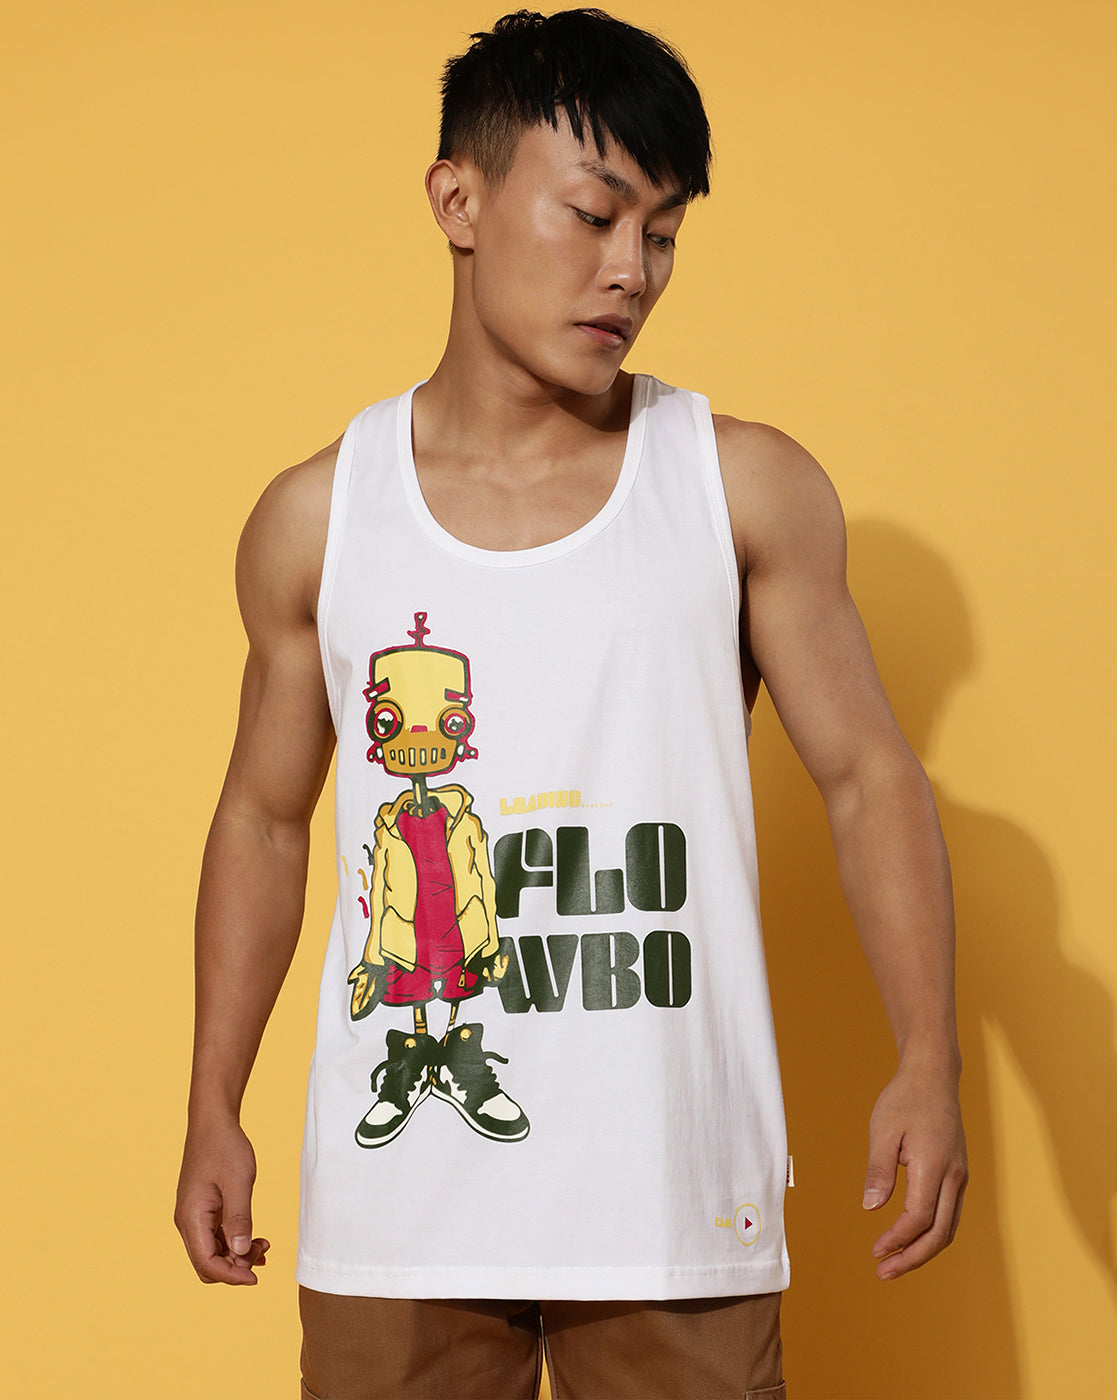 Flowbo White Men's Sleeveless T-Shirt Veirdo